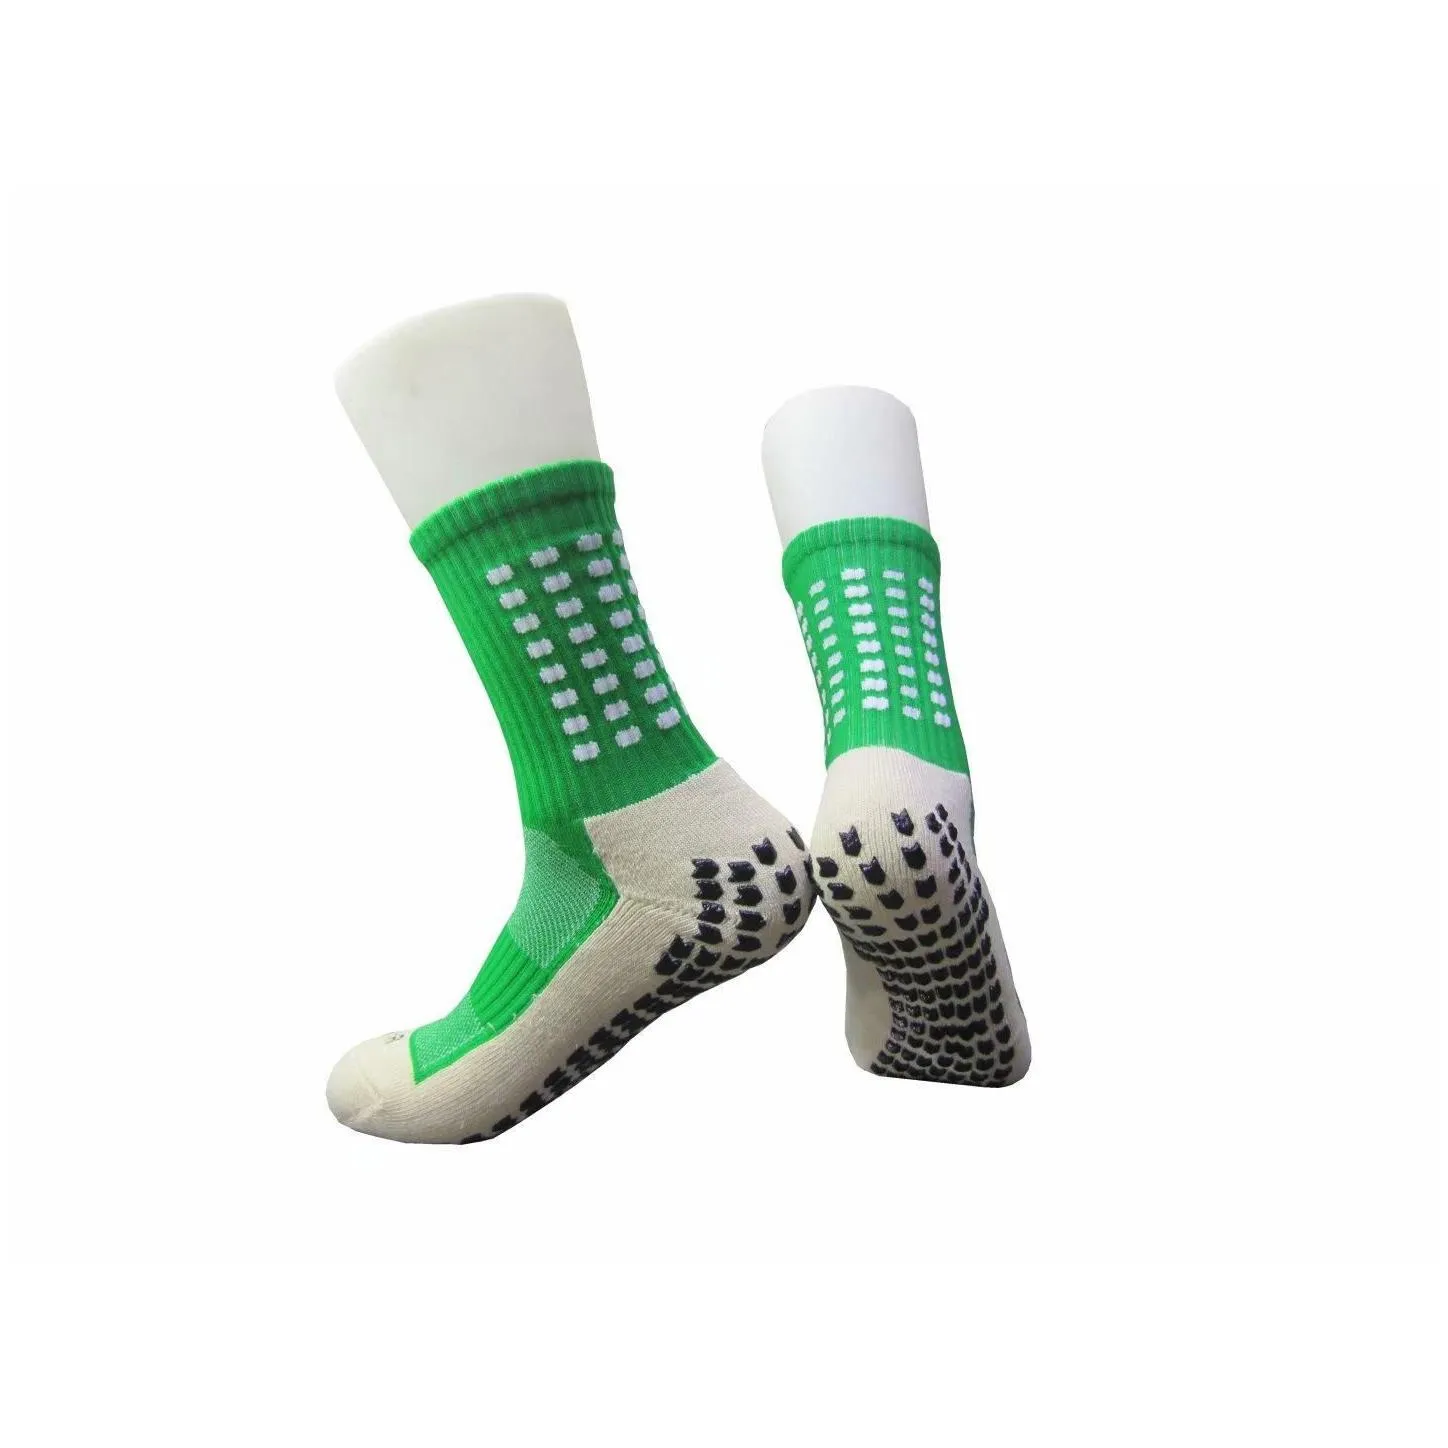 anti slip mens socks soccer sports running long stockings meias socks unisex male female casual socks fy7610 b1026